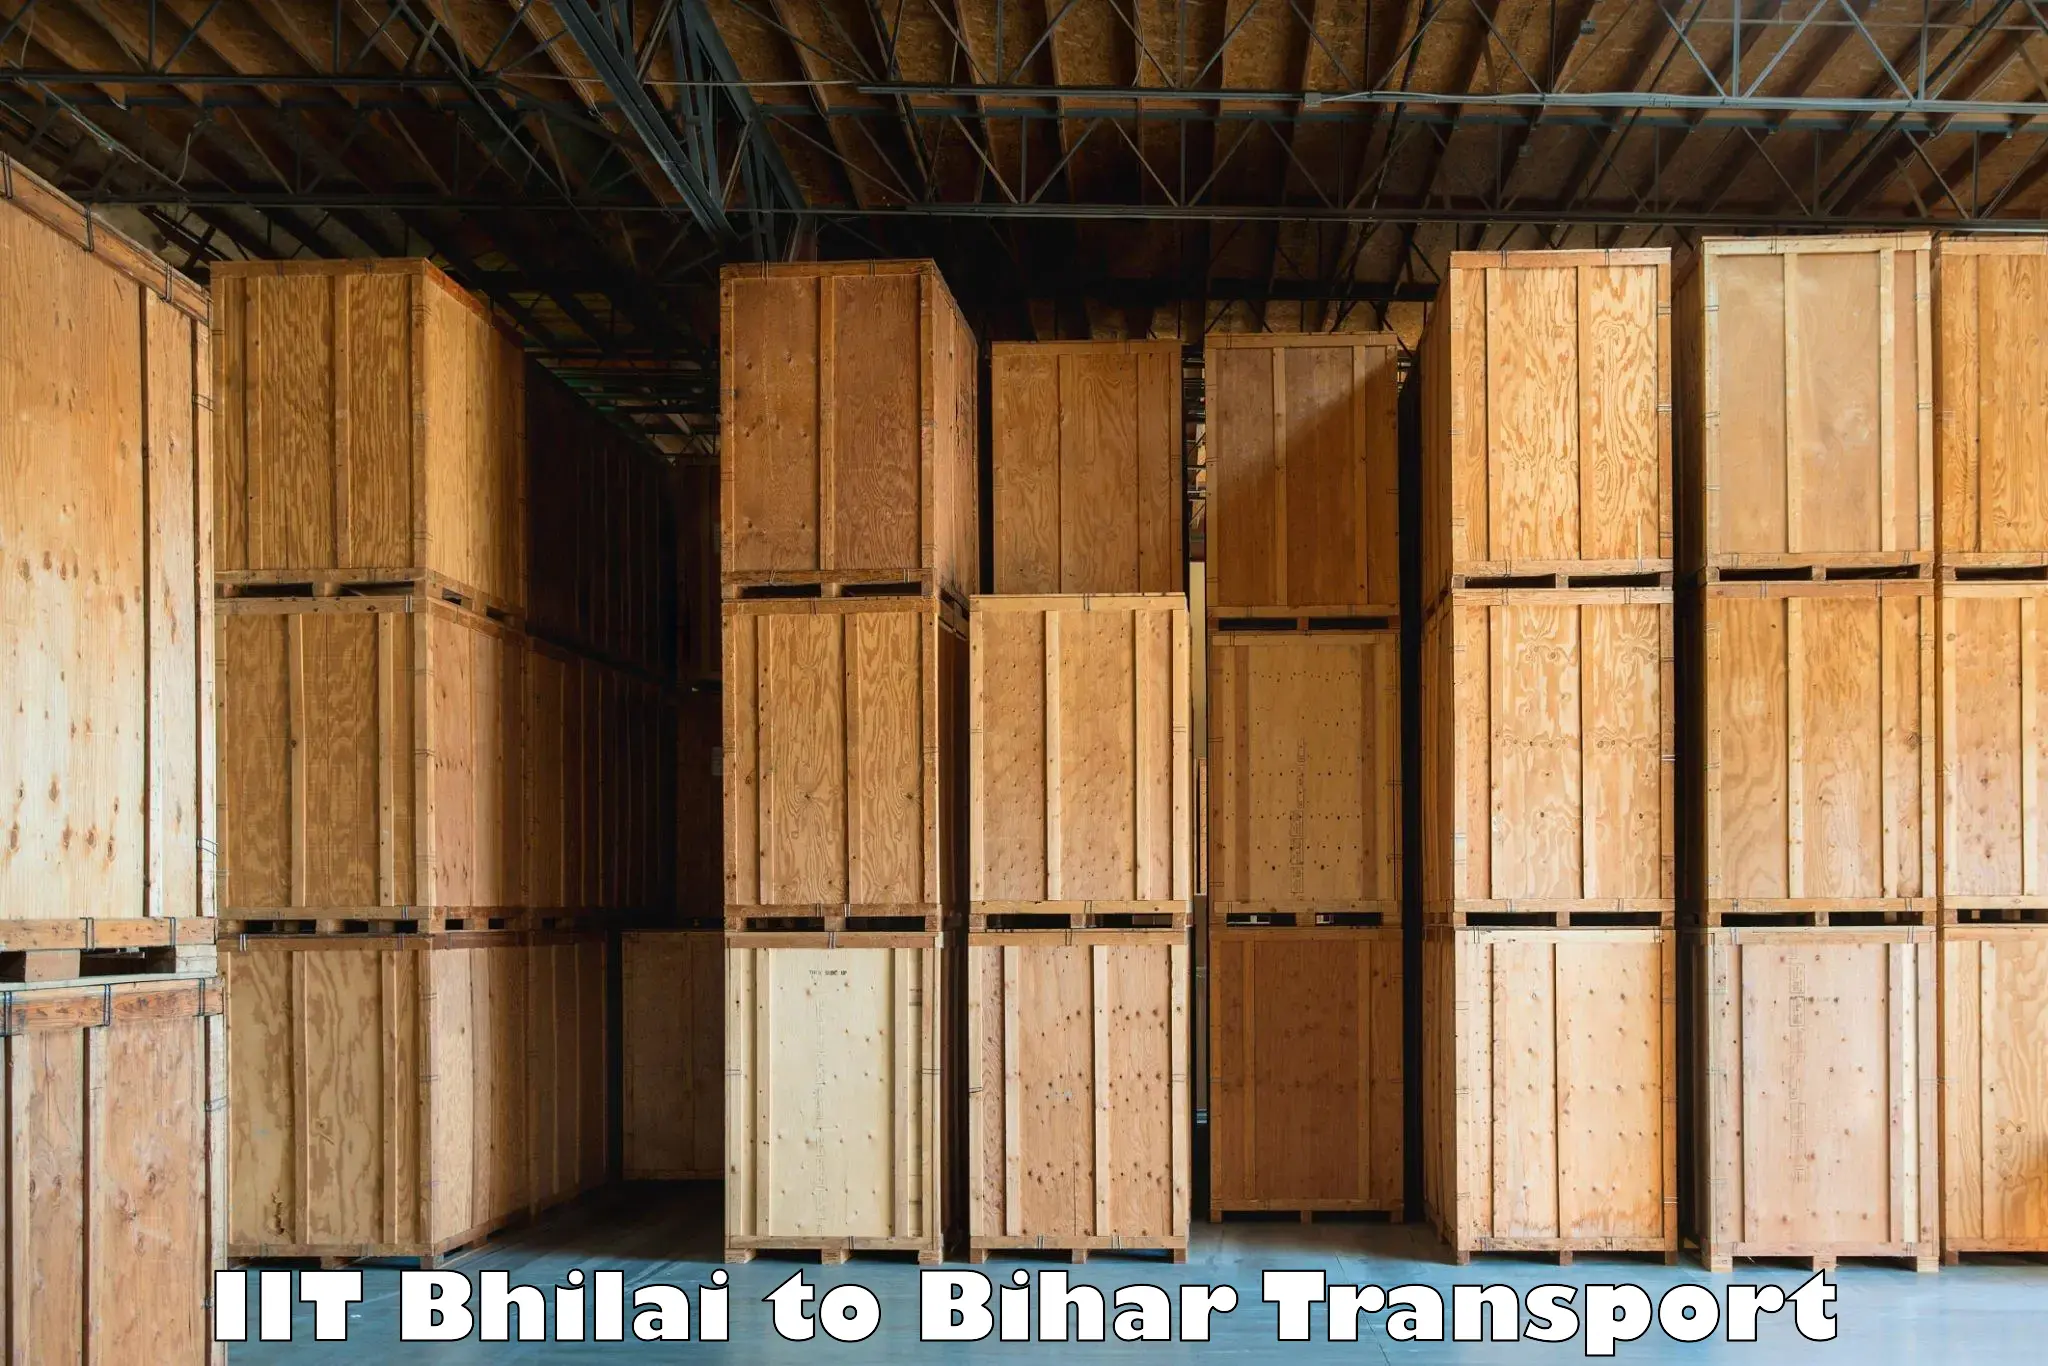 Online transport service IIT Bhilai to Bharwara